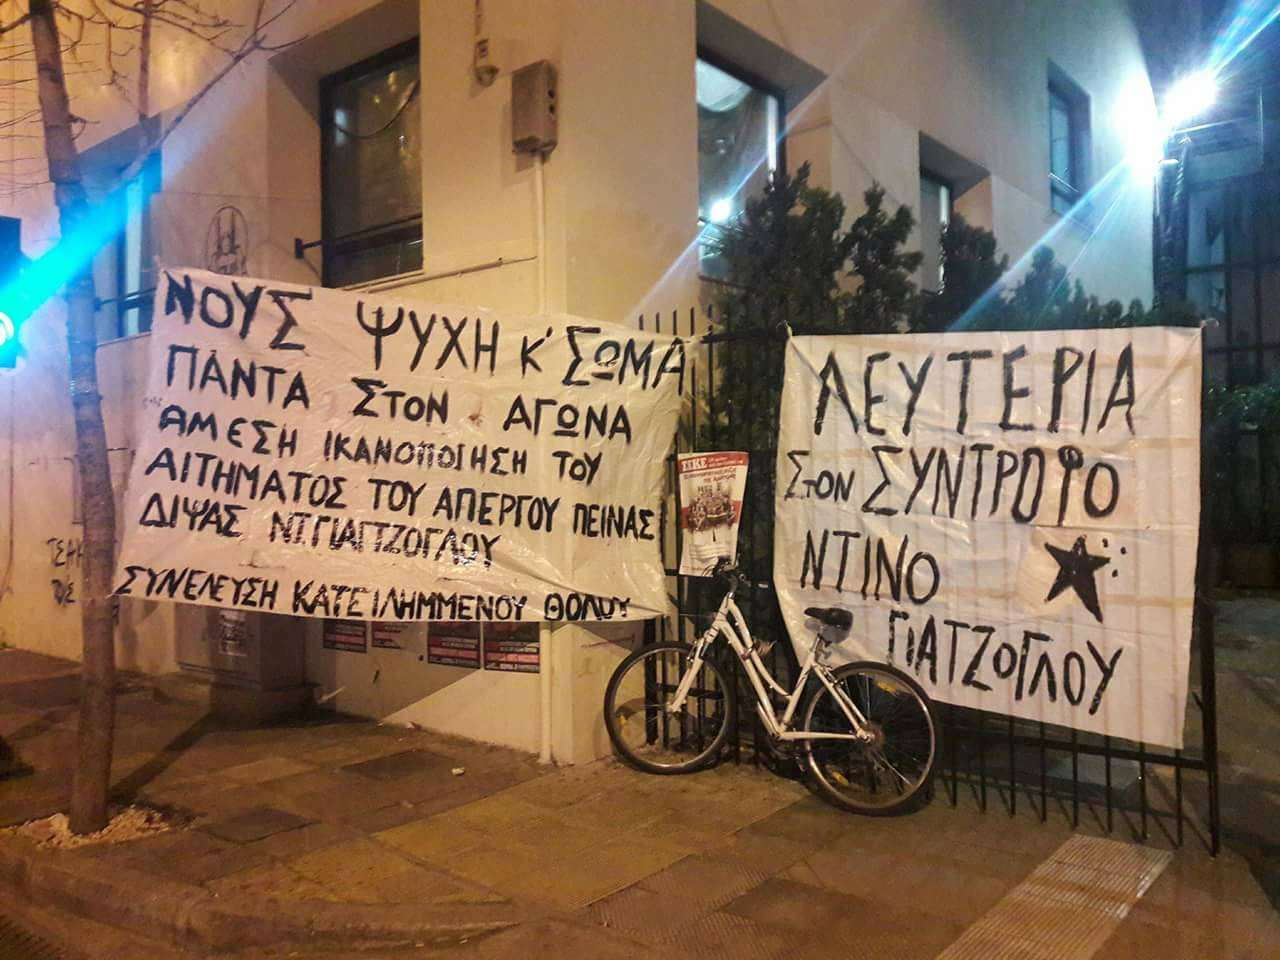 Βόλος: Κατάληψη Θόλου Πανεπιστημίου Θεσσαλίας σε ένδειξη αλληλεγγύης στον Ντίνο Γιαγτζόγλου